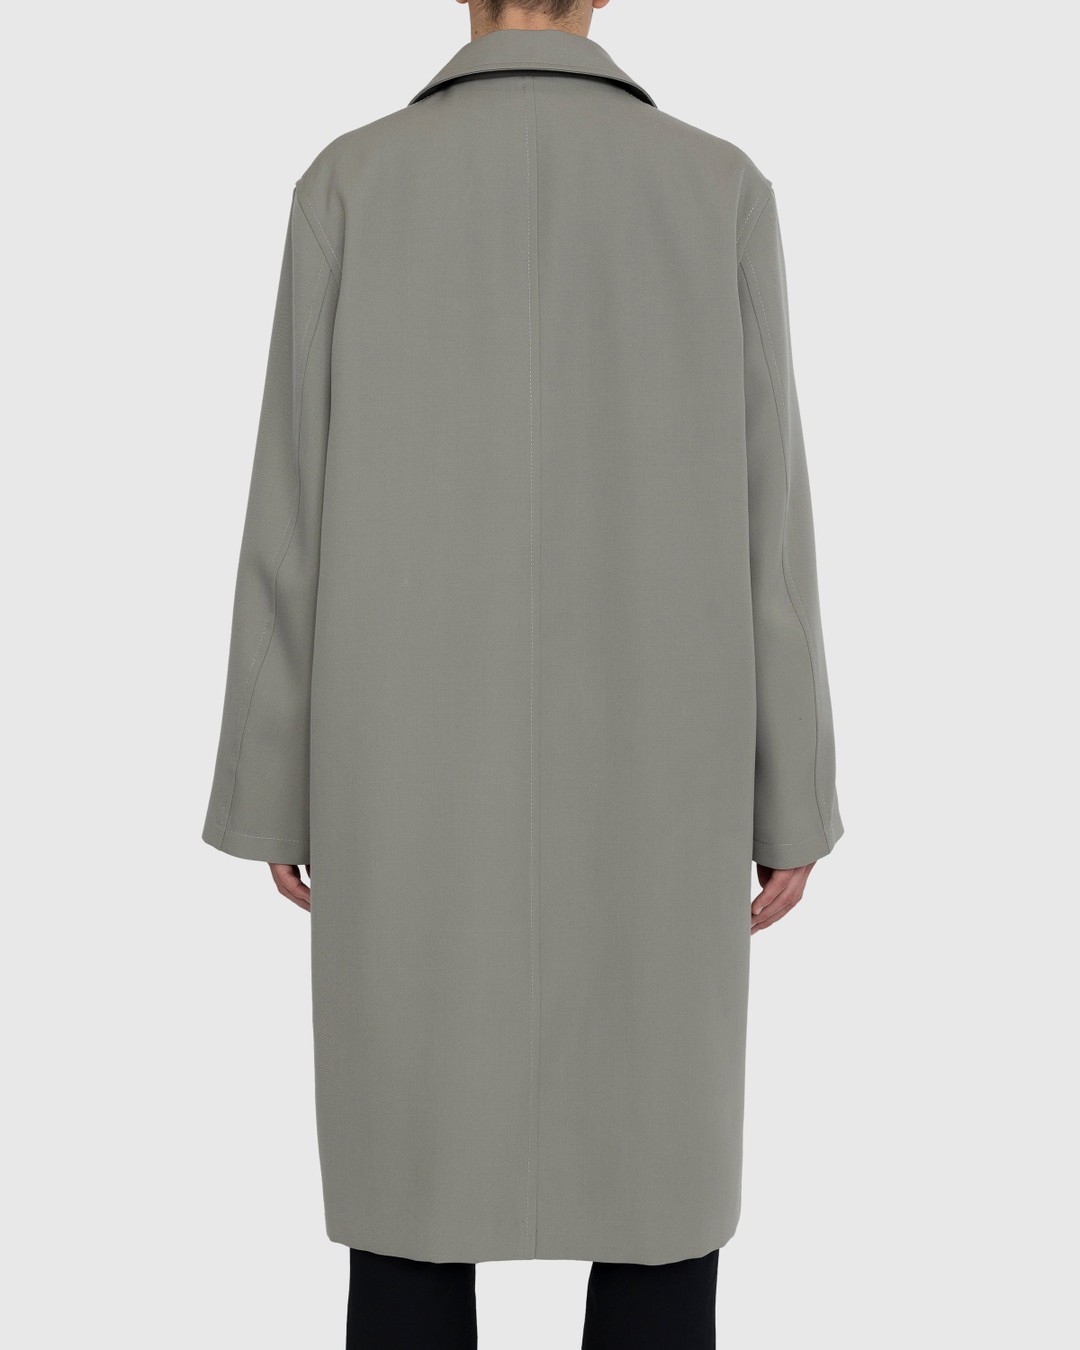 Jil Sander – Wool Coat Green - Outerwear - Grey - Image 3